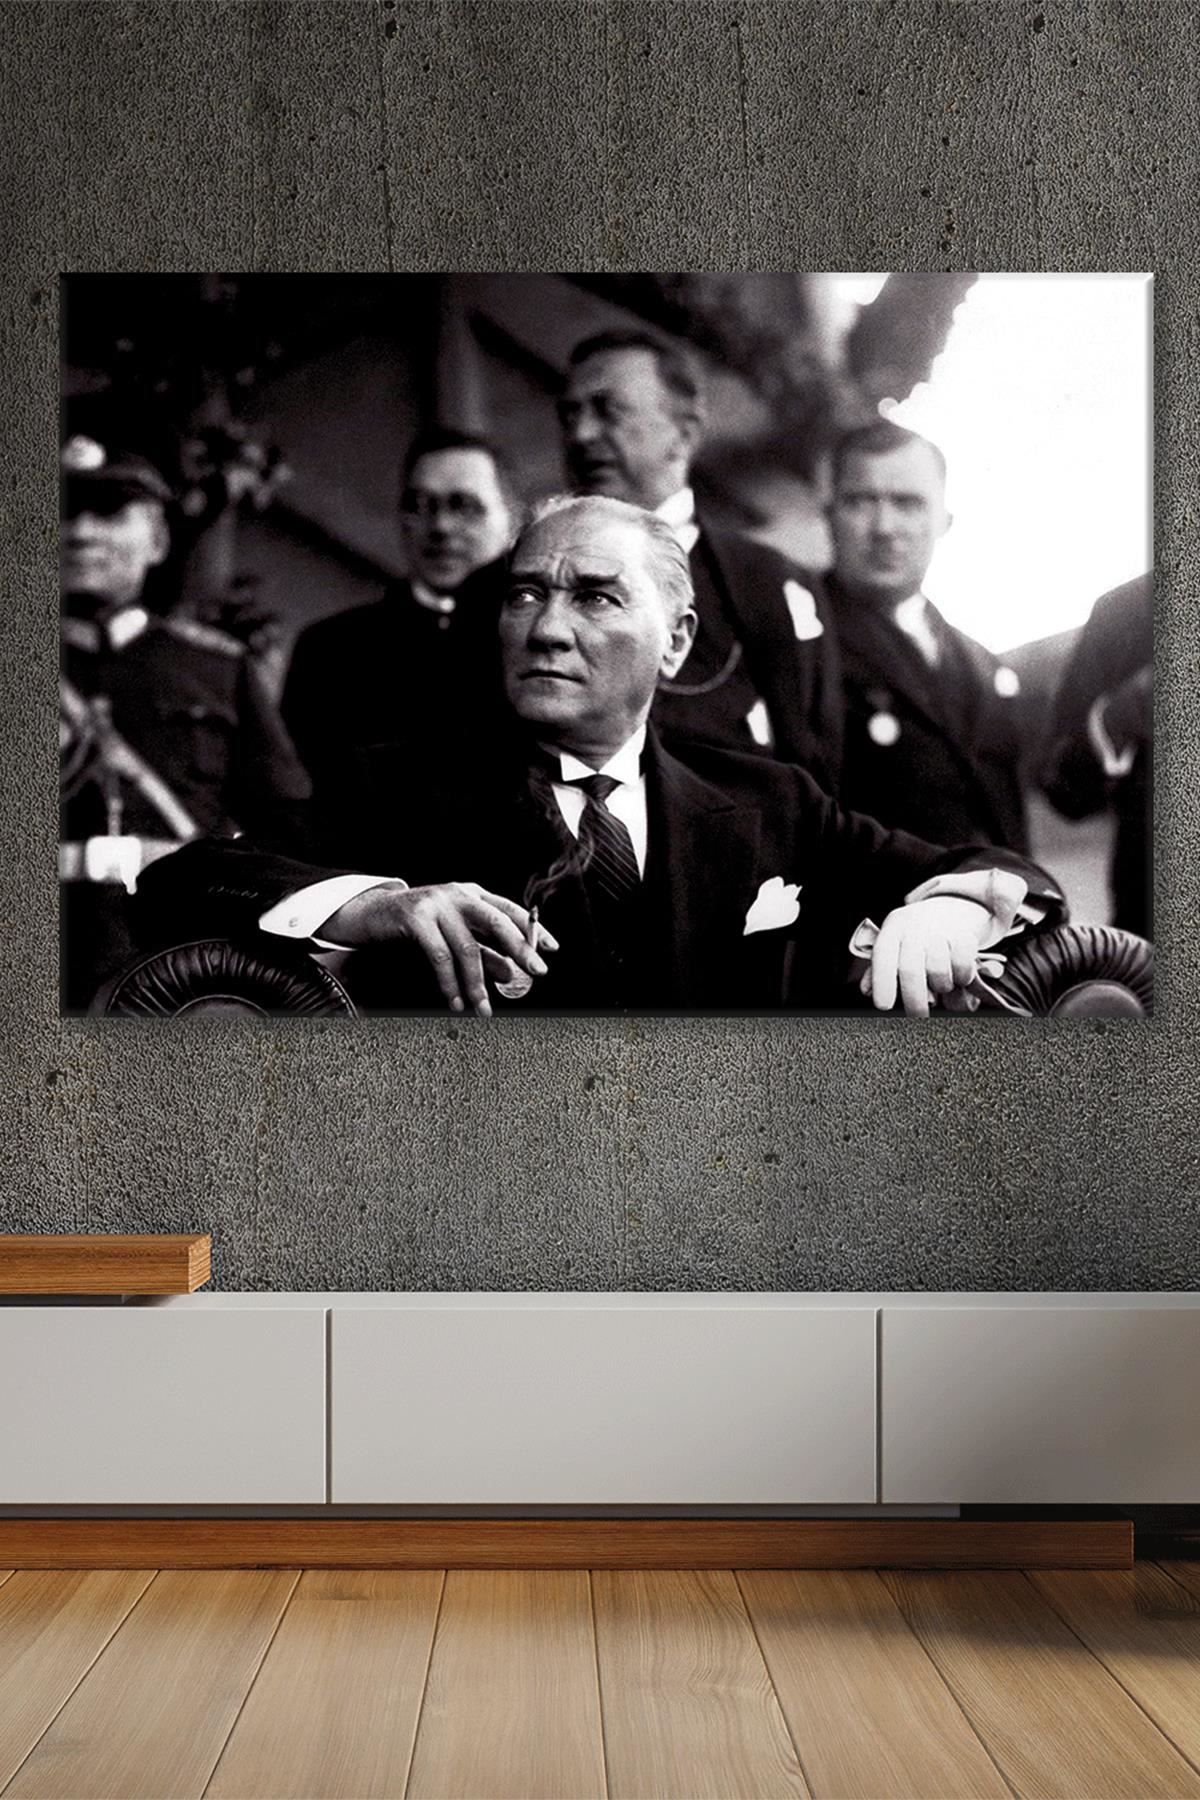 Atatürk İran Şahı'nın Ziyareti ile Ankara'da Yapılan Törende Kanvas Duvar Tablo 221575